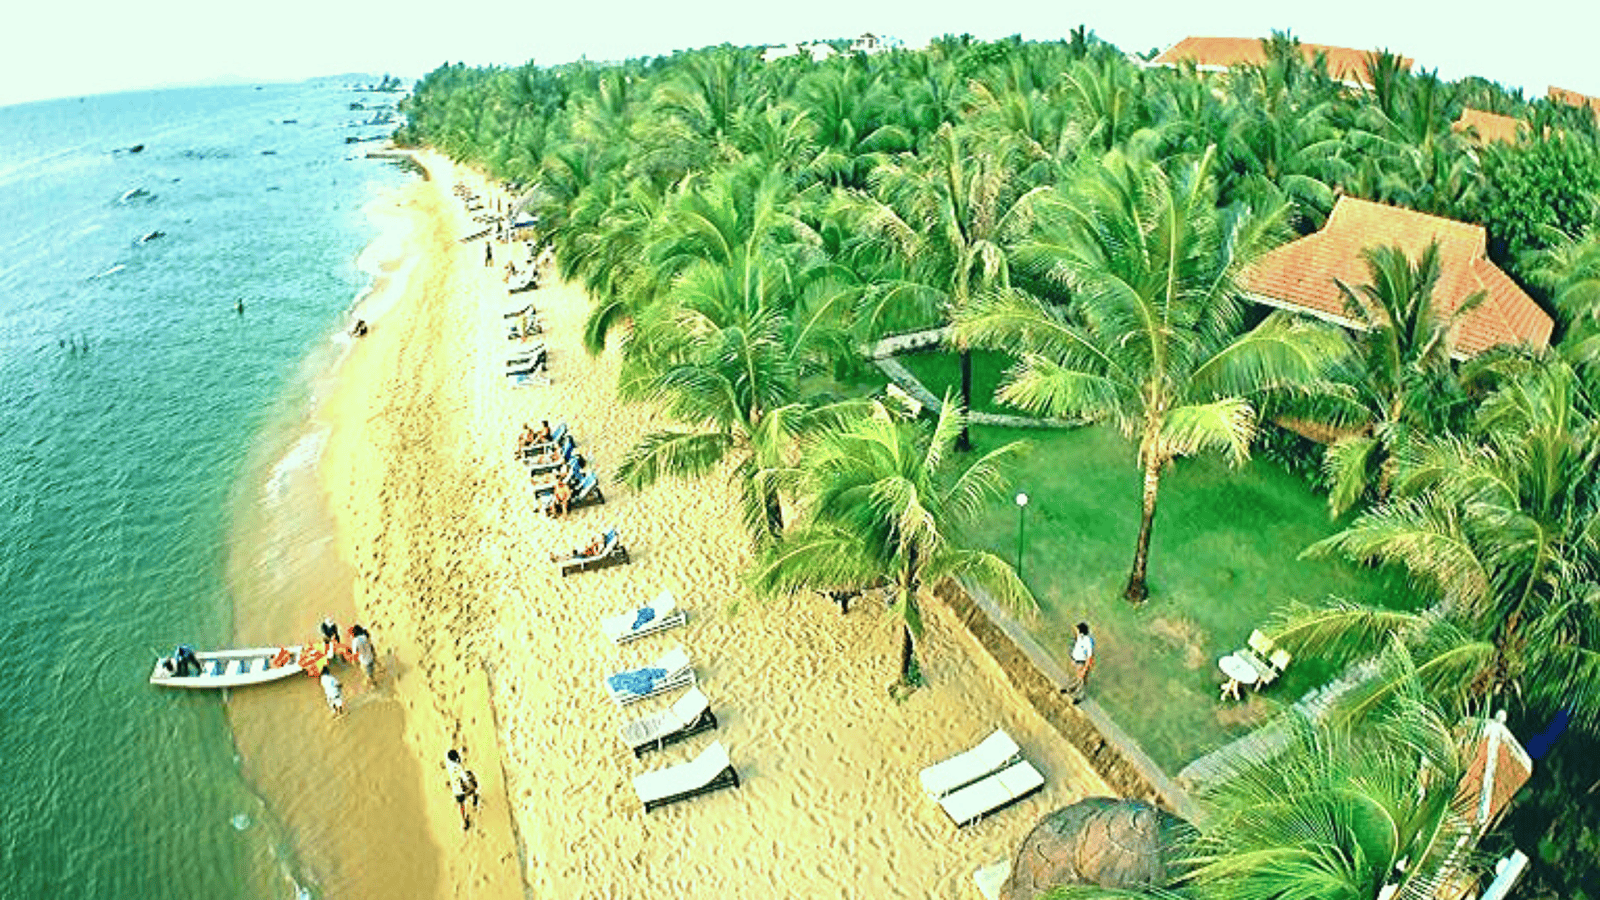 Bãi Sau nổi tiếng với hàng dừa cong vút, bãi biển trải dài